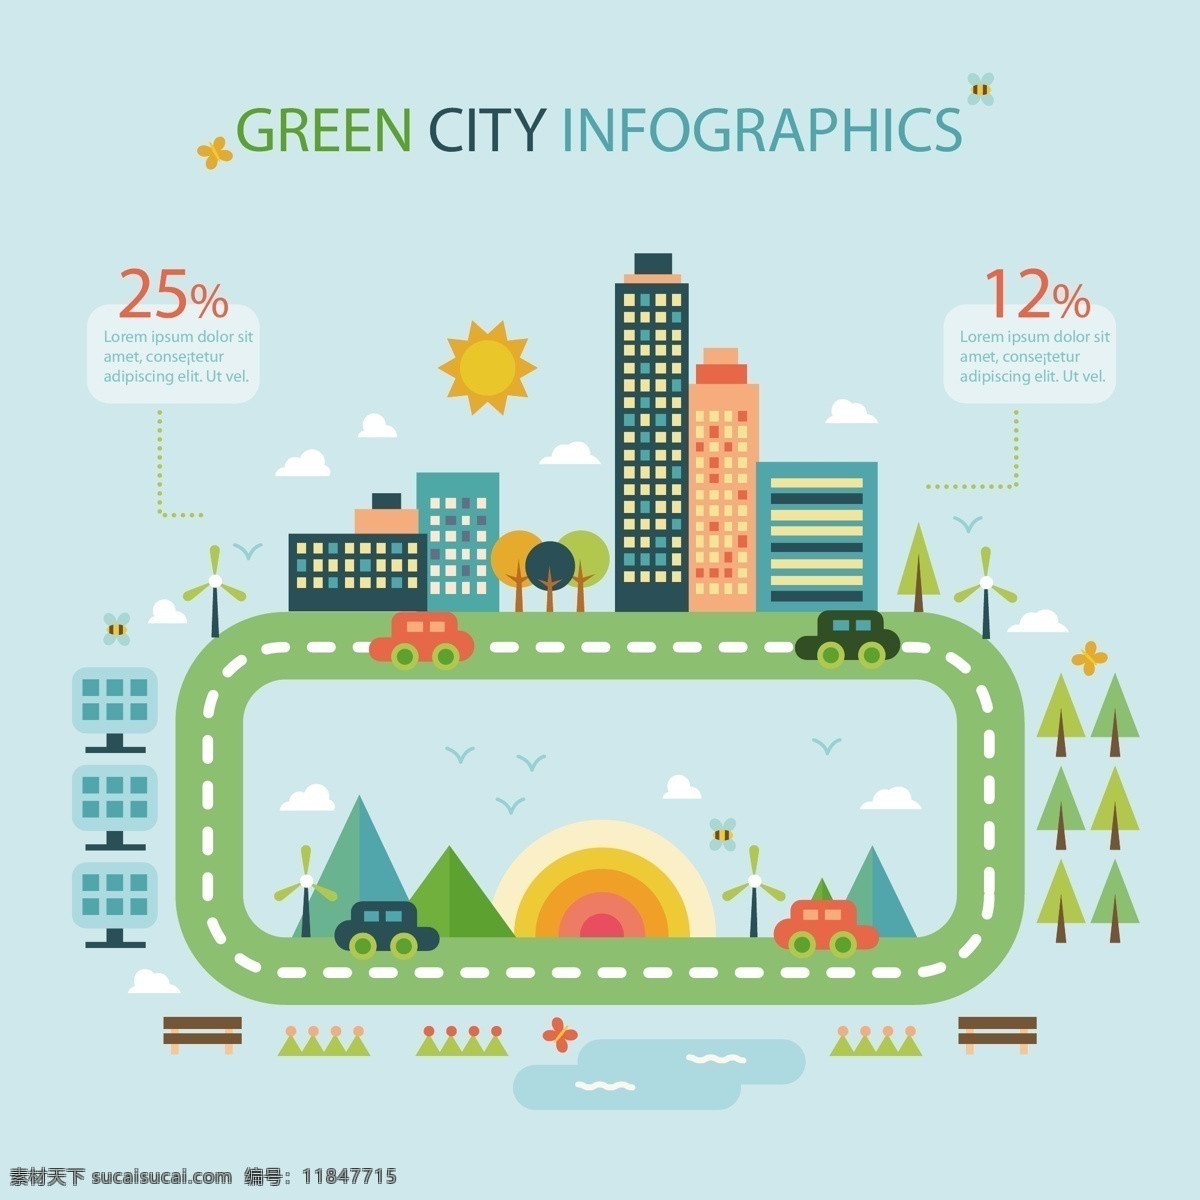 生态城市 模板 路平 蔬菜 图表 图形 汽车 环保 能源 有机 树 图 信息 流程 数据